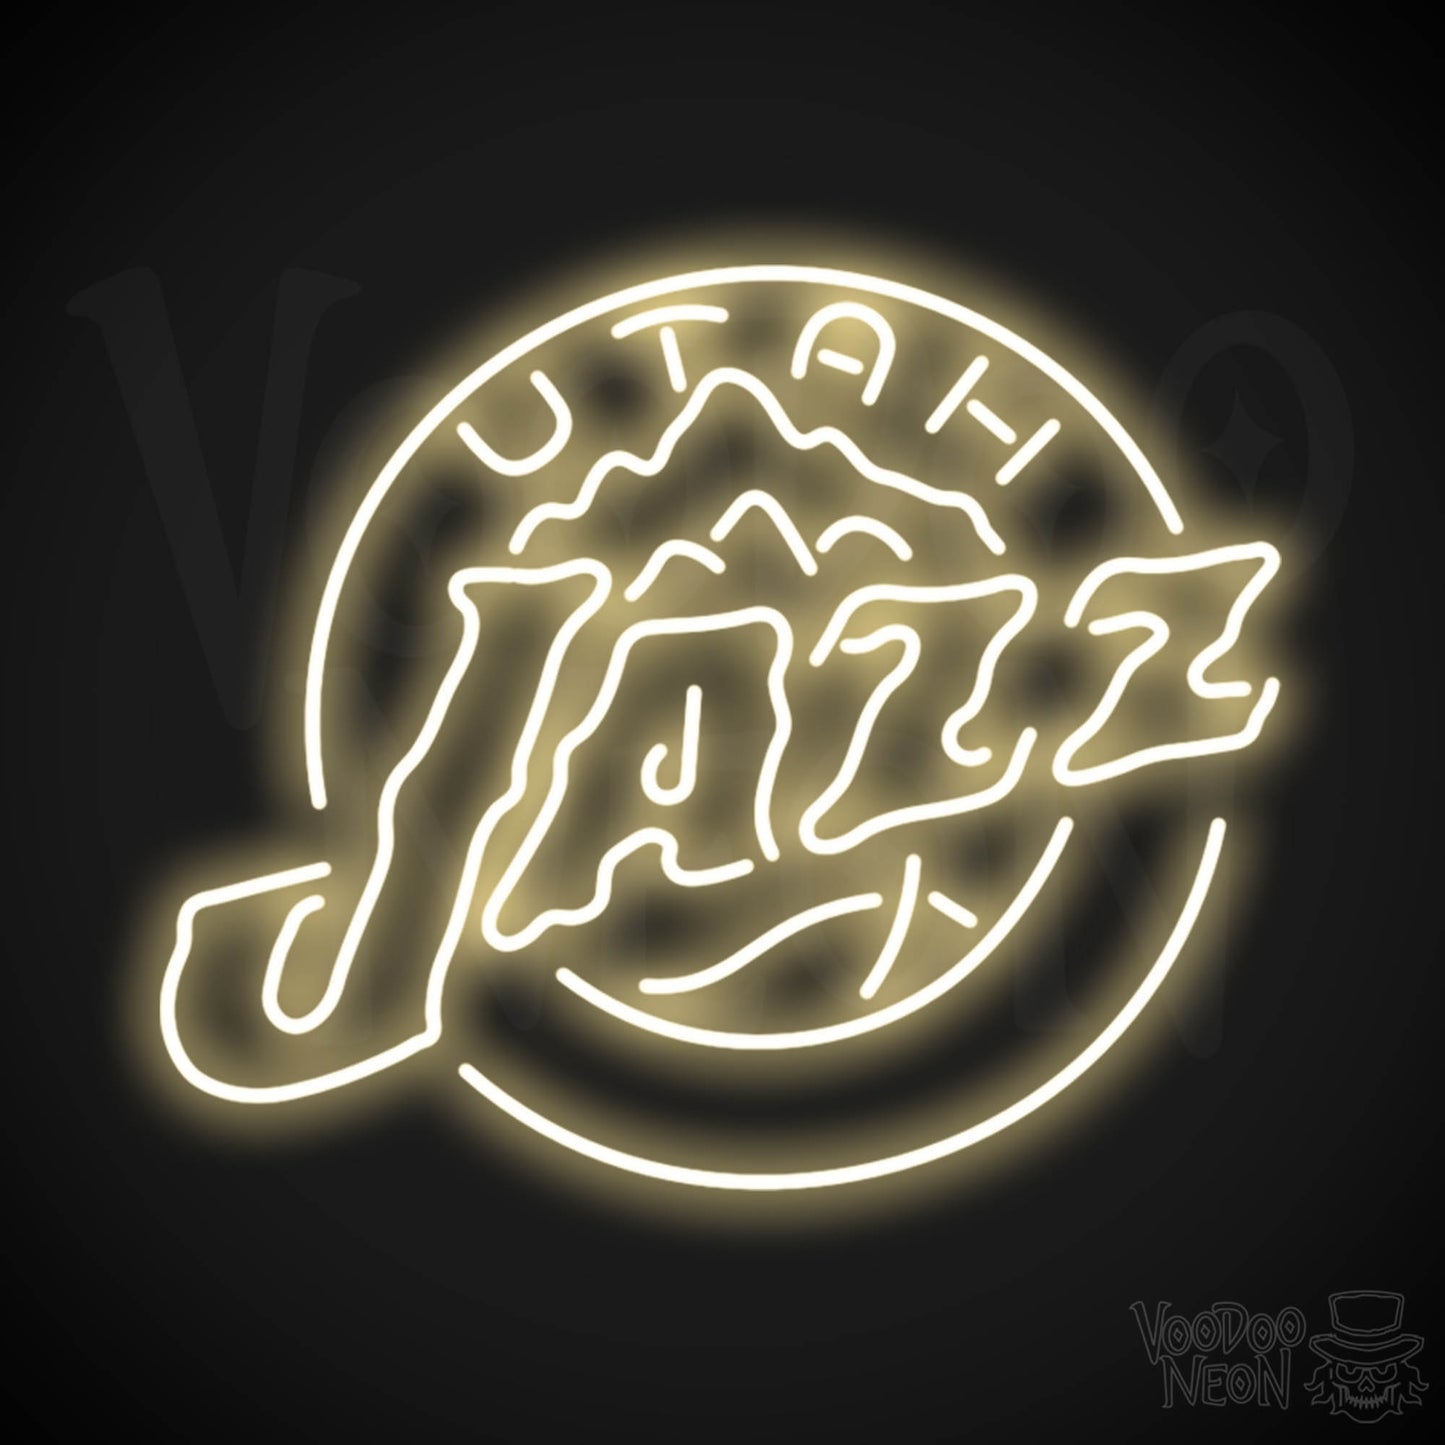 Utah Jazz Neon Sign - Utah Jazz Sign - Neon Jazz Logo Wall Art - Color Warm White